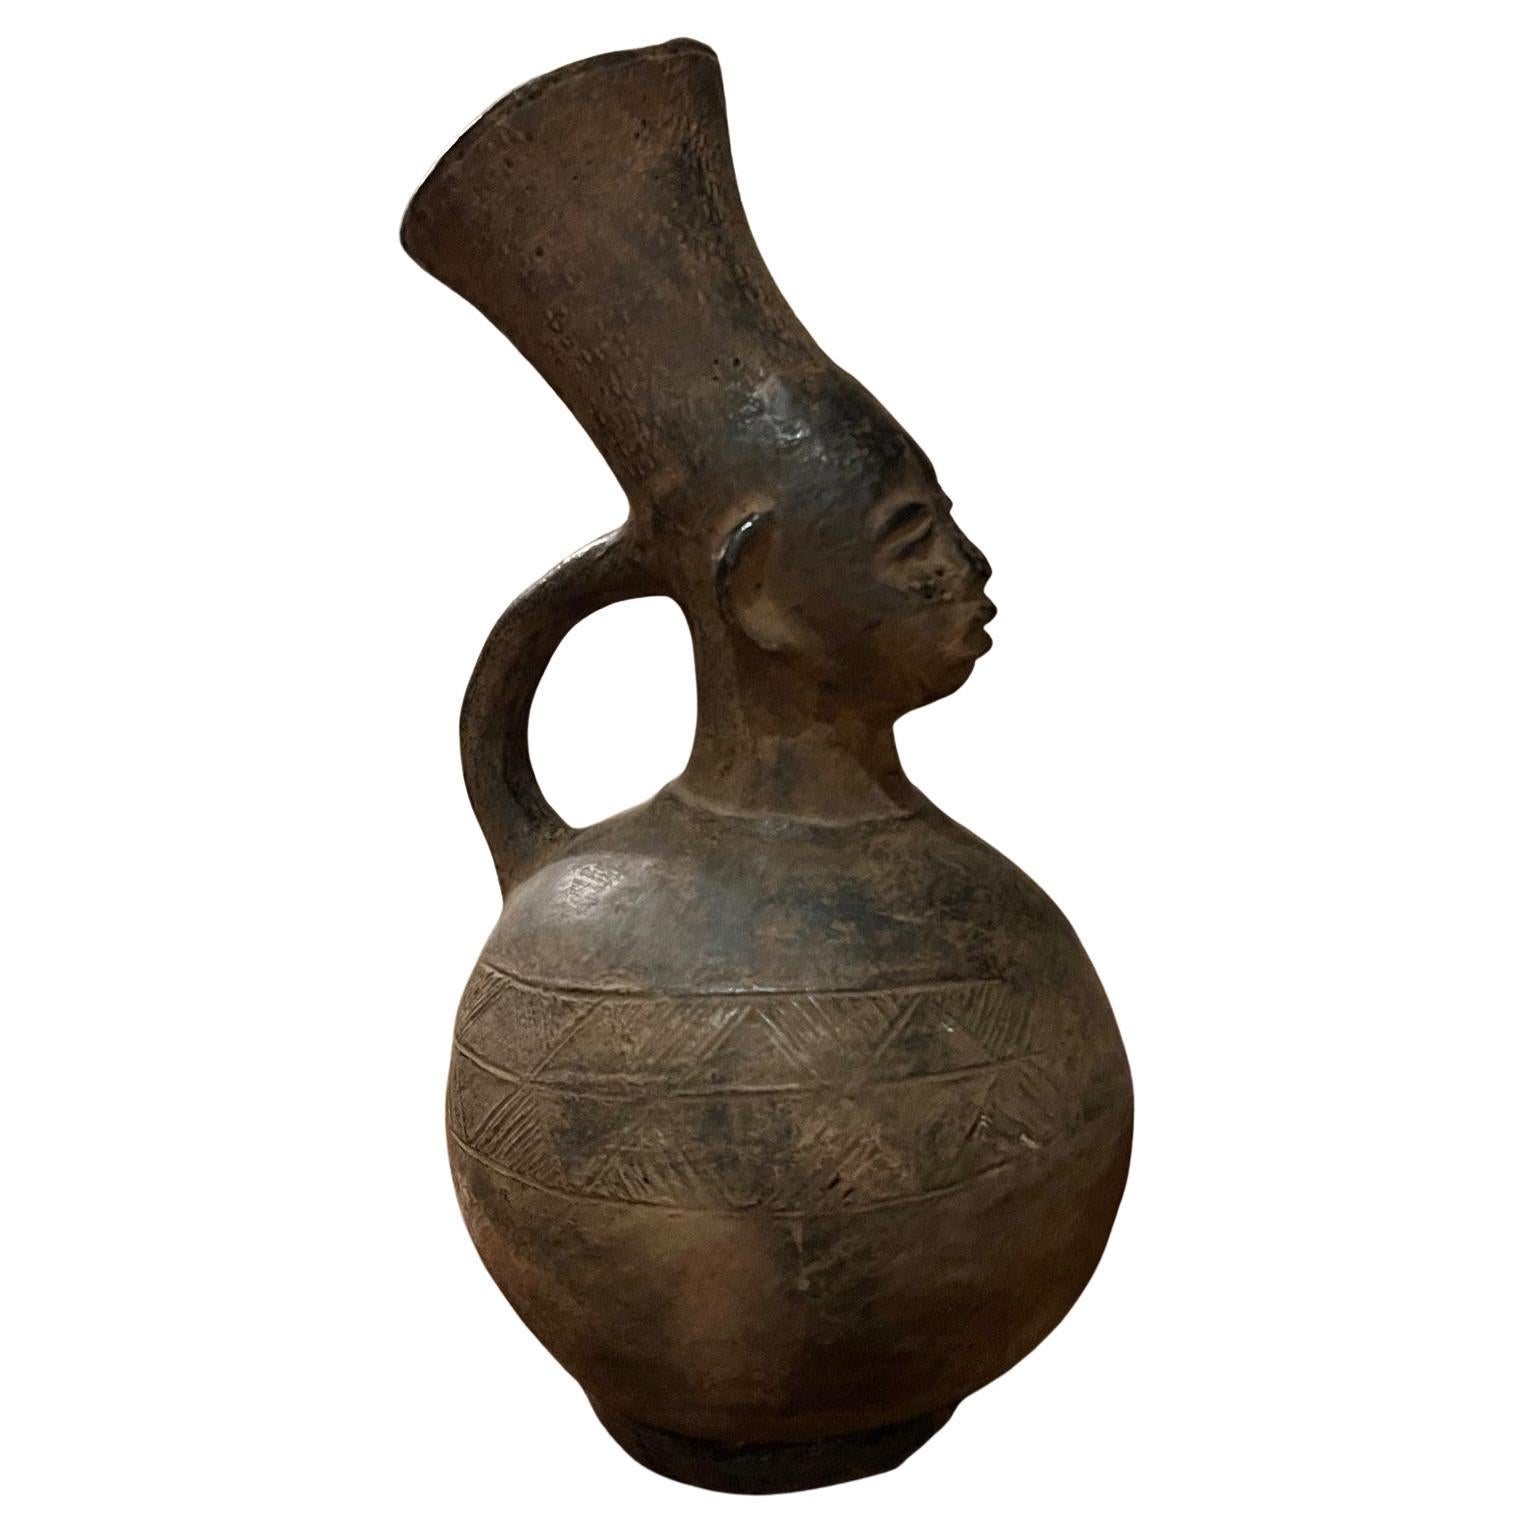 Großes antikes figuratives afrikanisches anthropomorphes Gefäß des Mangbetu-Volkes